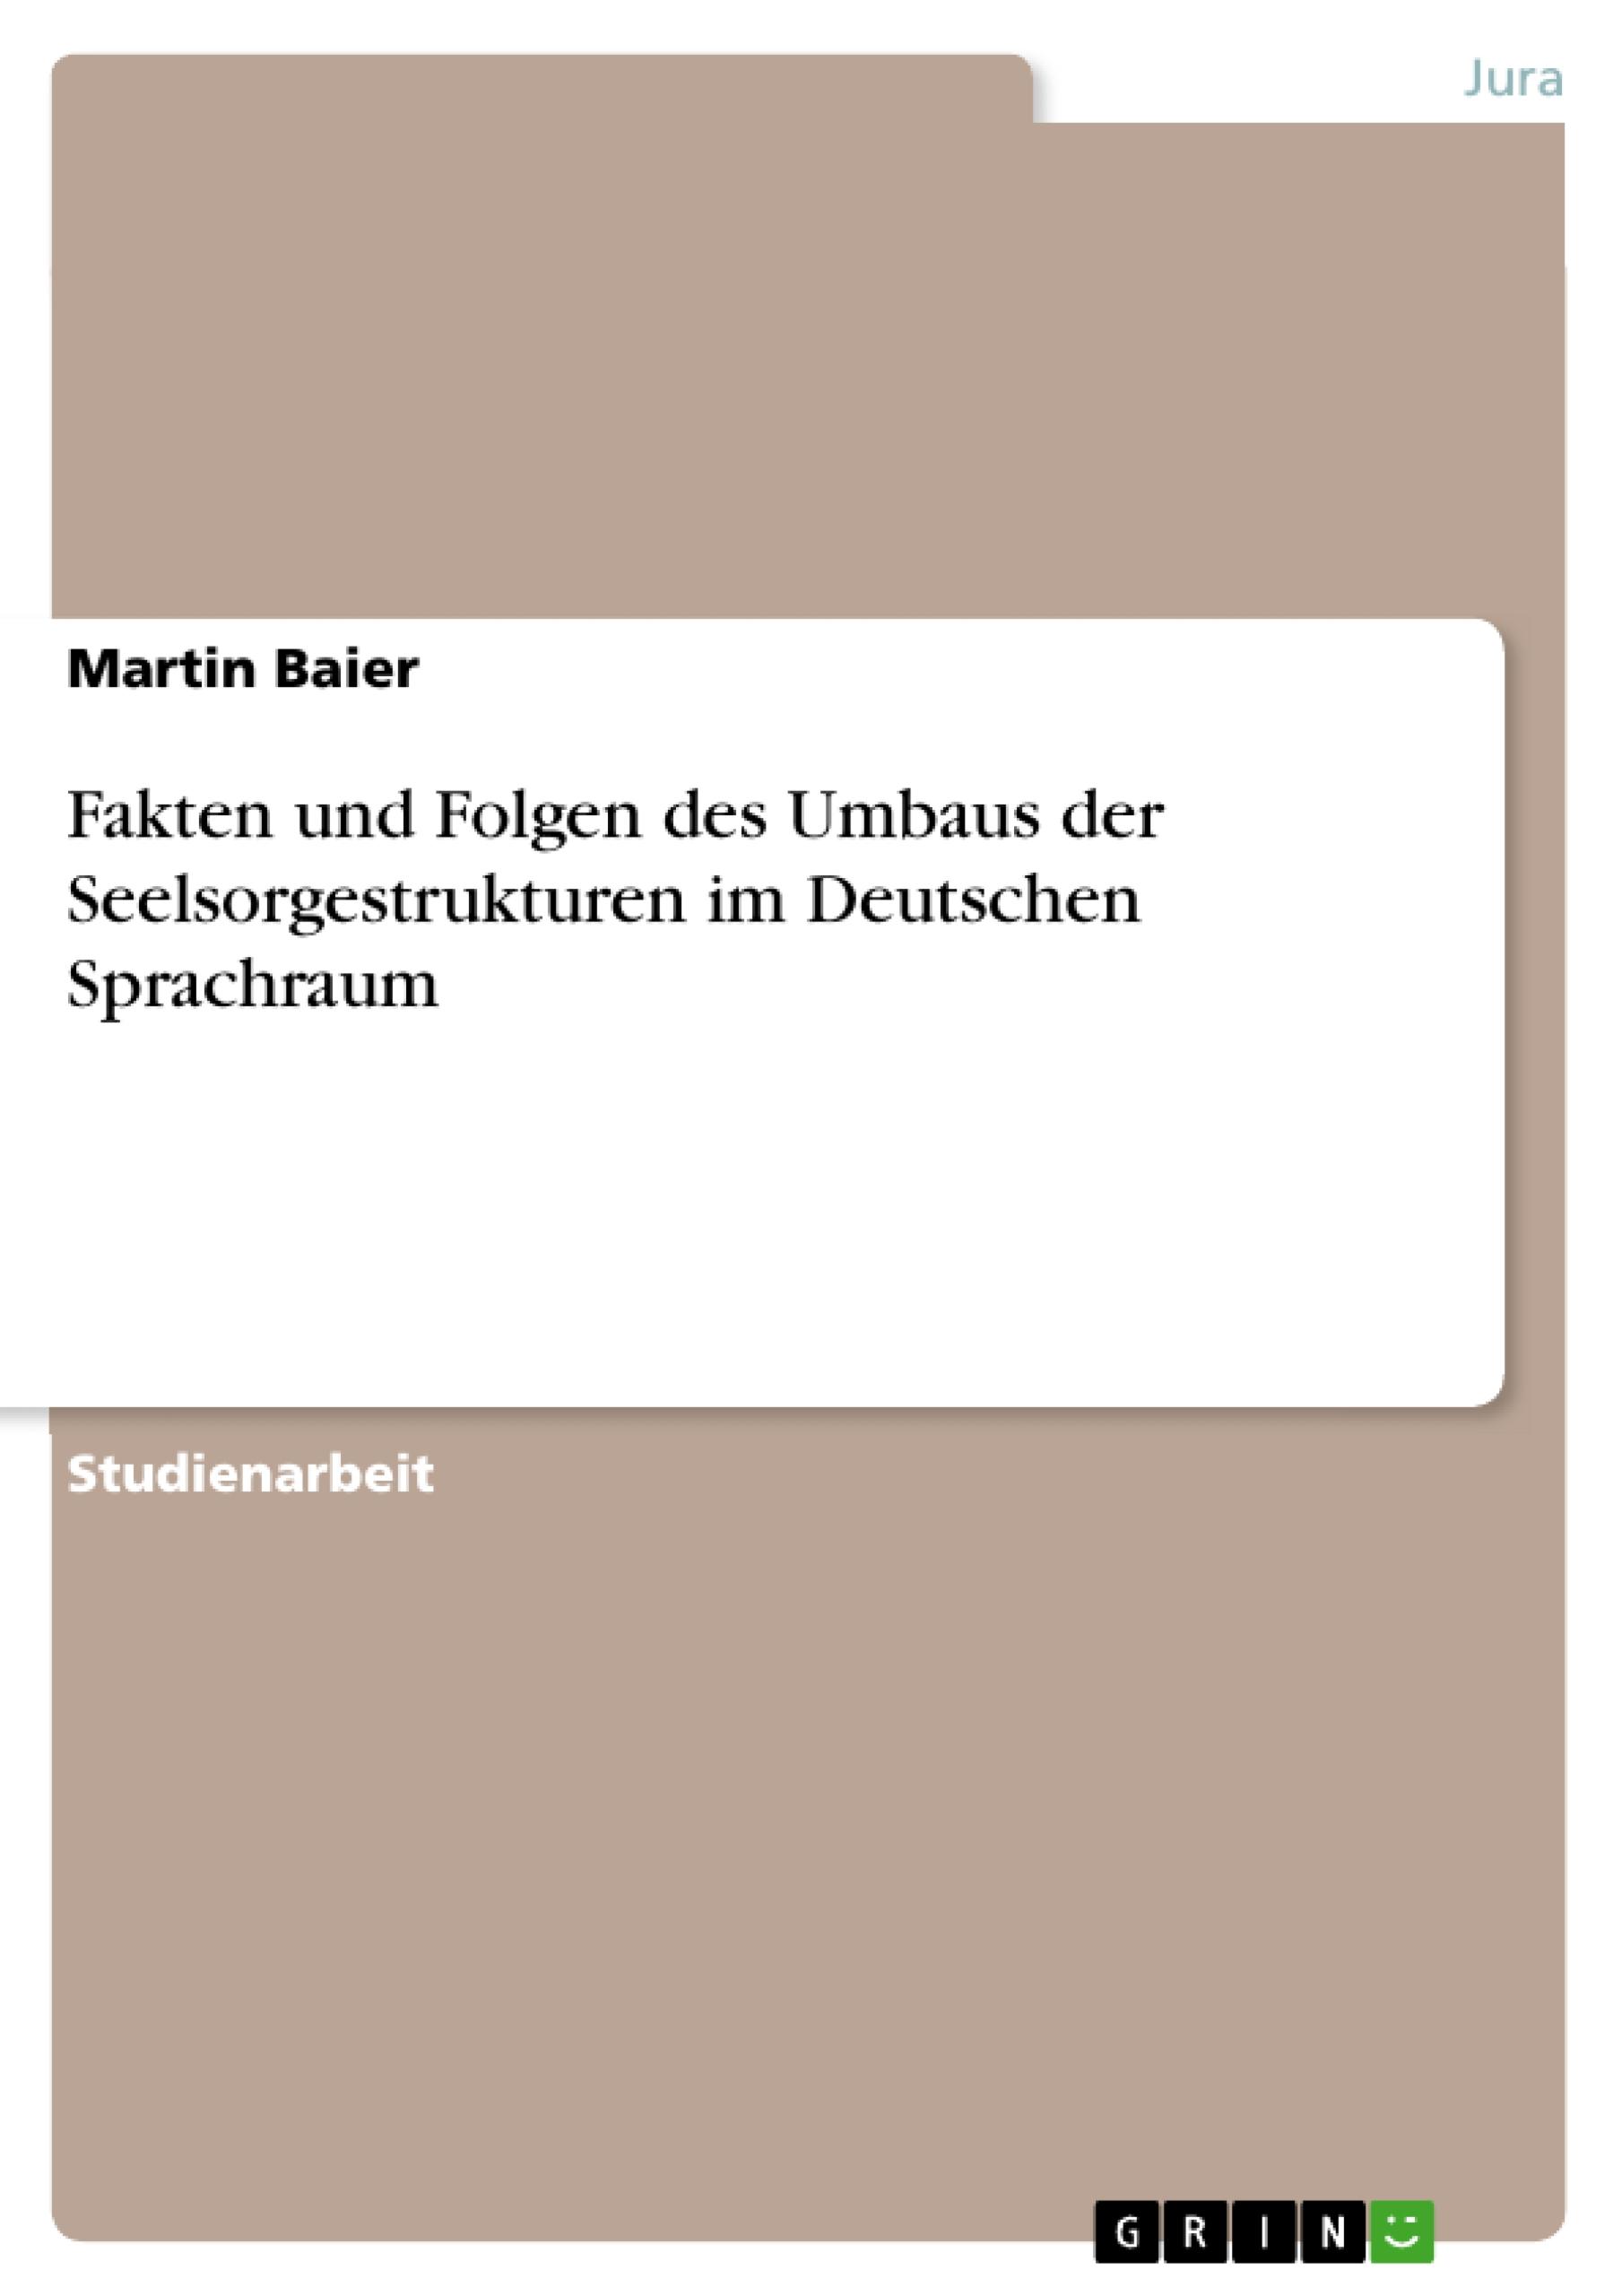 Fakten und Folgen des Umbaus der Seelsorgestrukturen im Deutschen Sprachraum - Baier, Martin